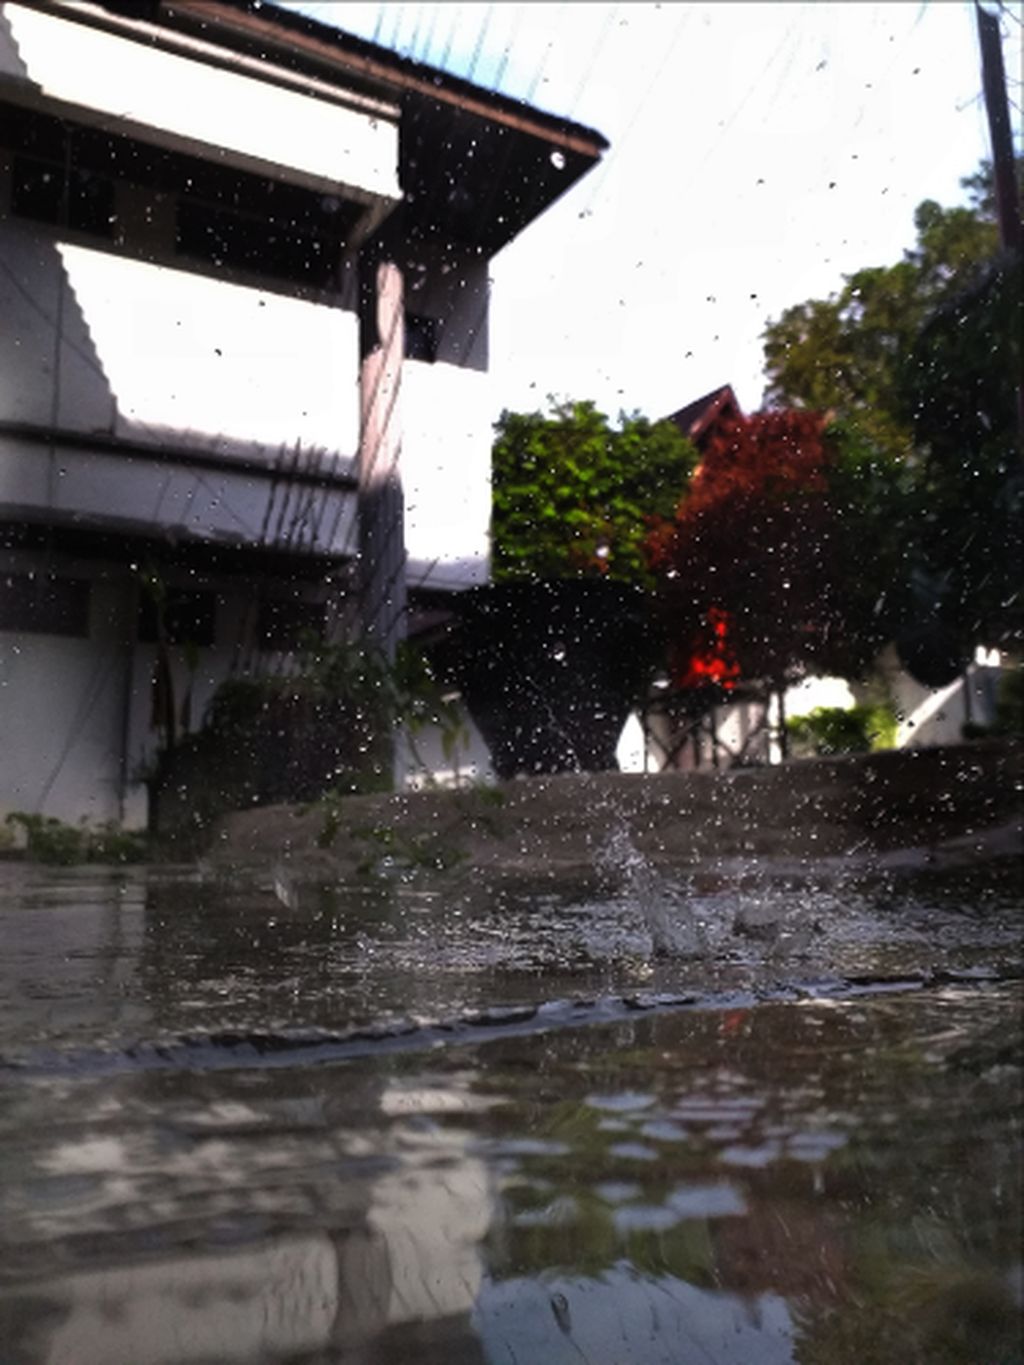 35 Trend Kata Kata  Di  Pagi  Hari  Saat Hujan  Terkini 